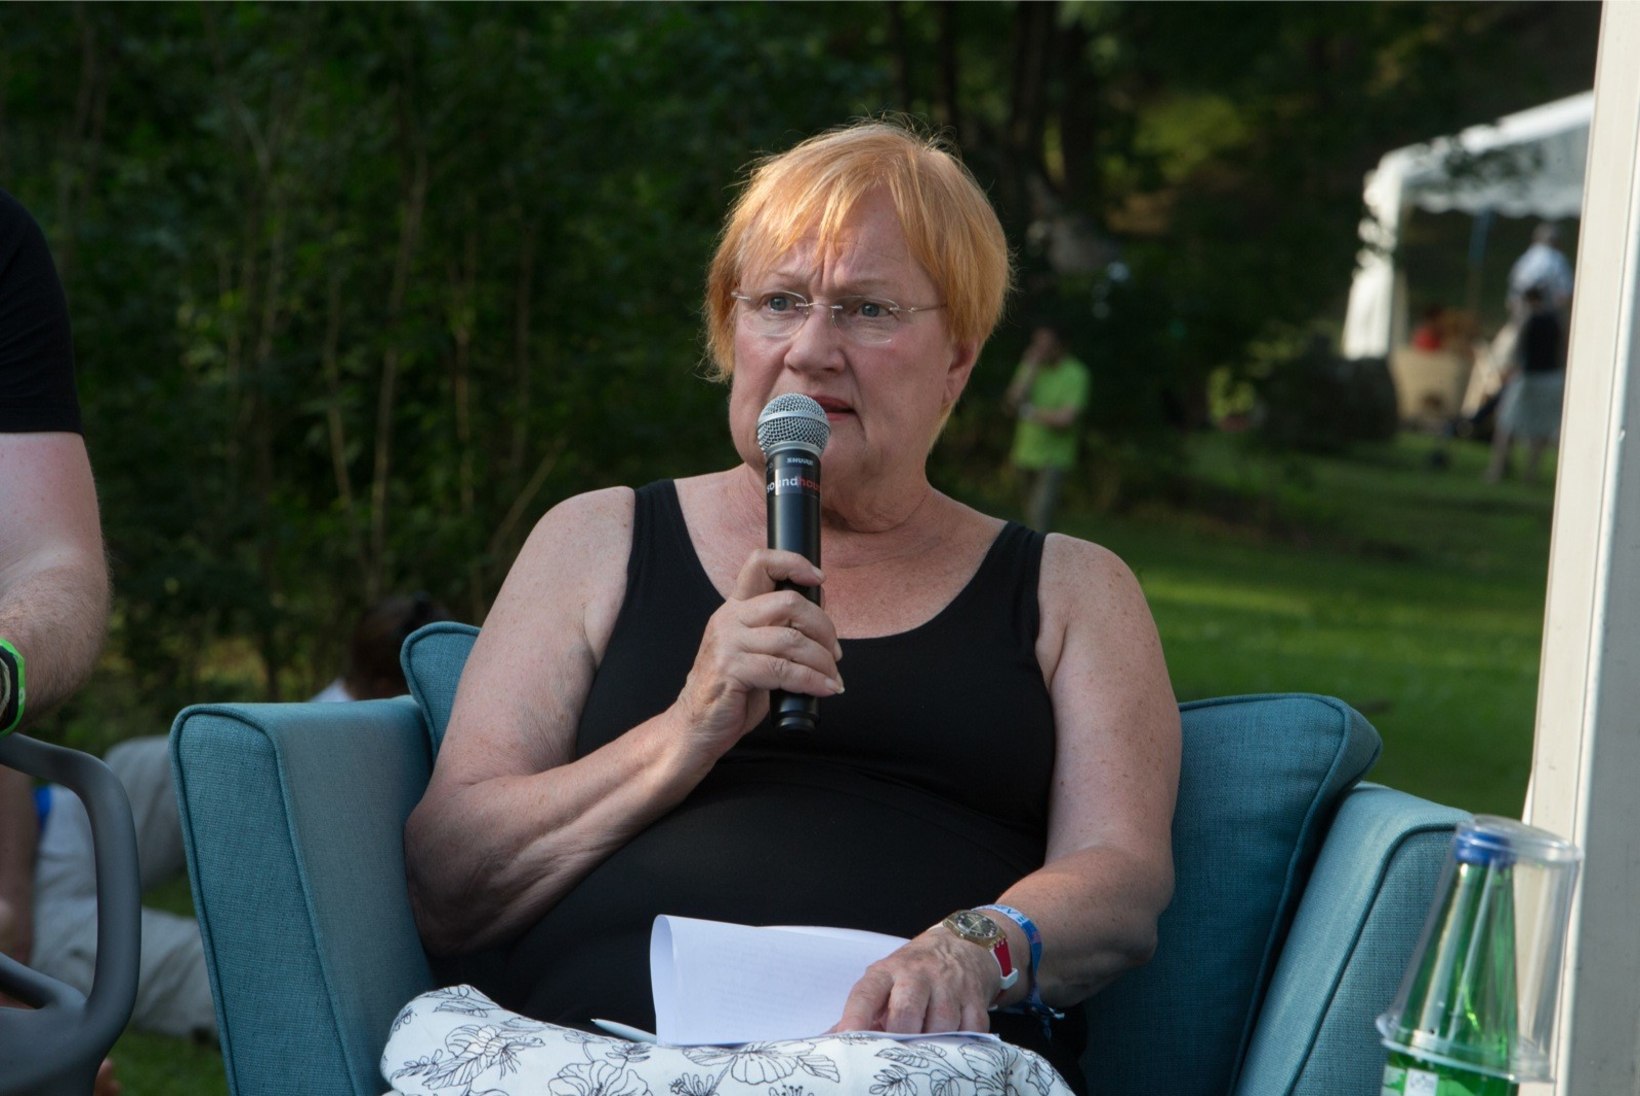 Soome ekspresident Tarja Halonen: „Olen vanaemana ilmselt sama kehv kui emana.“